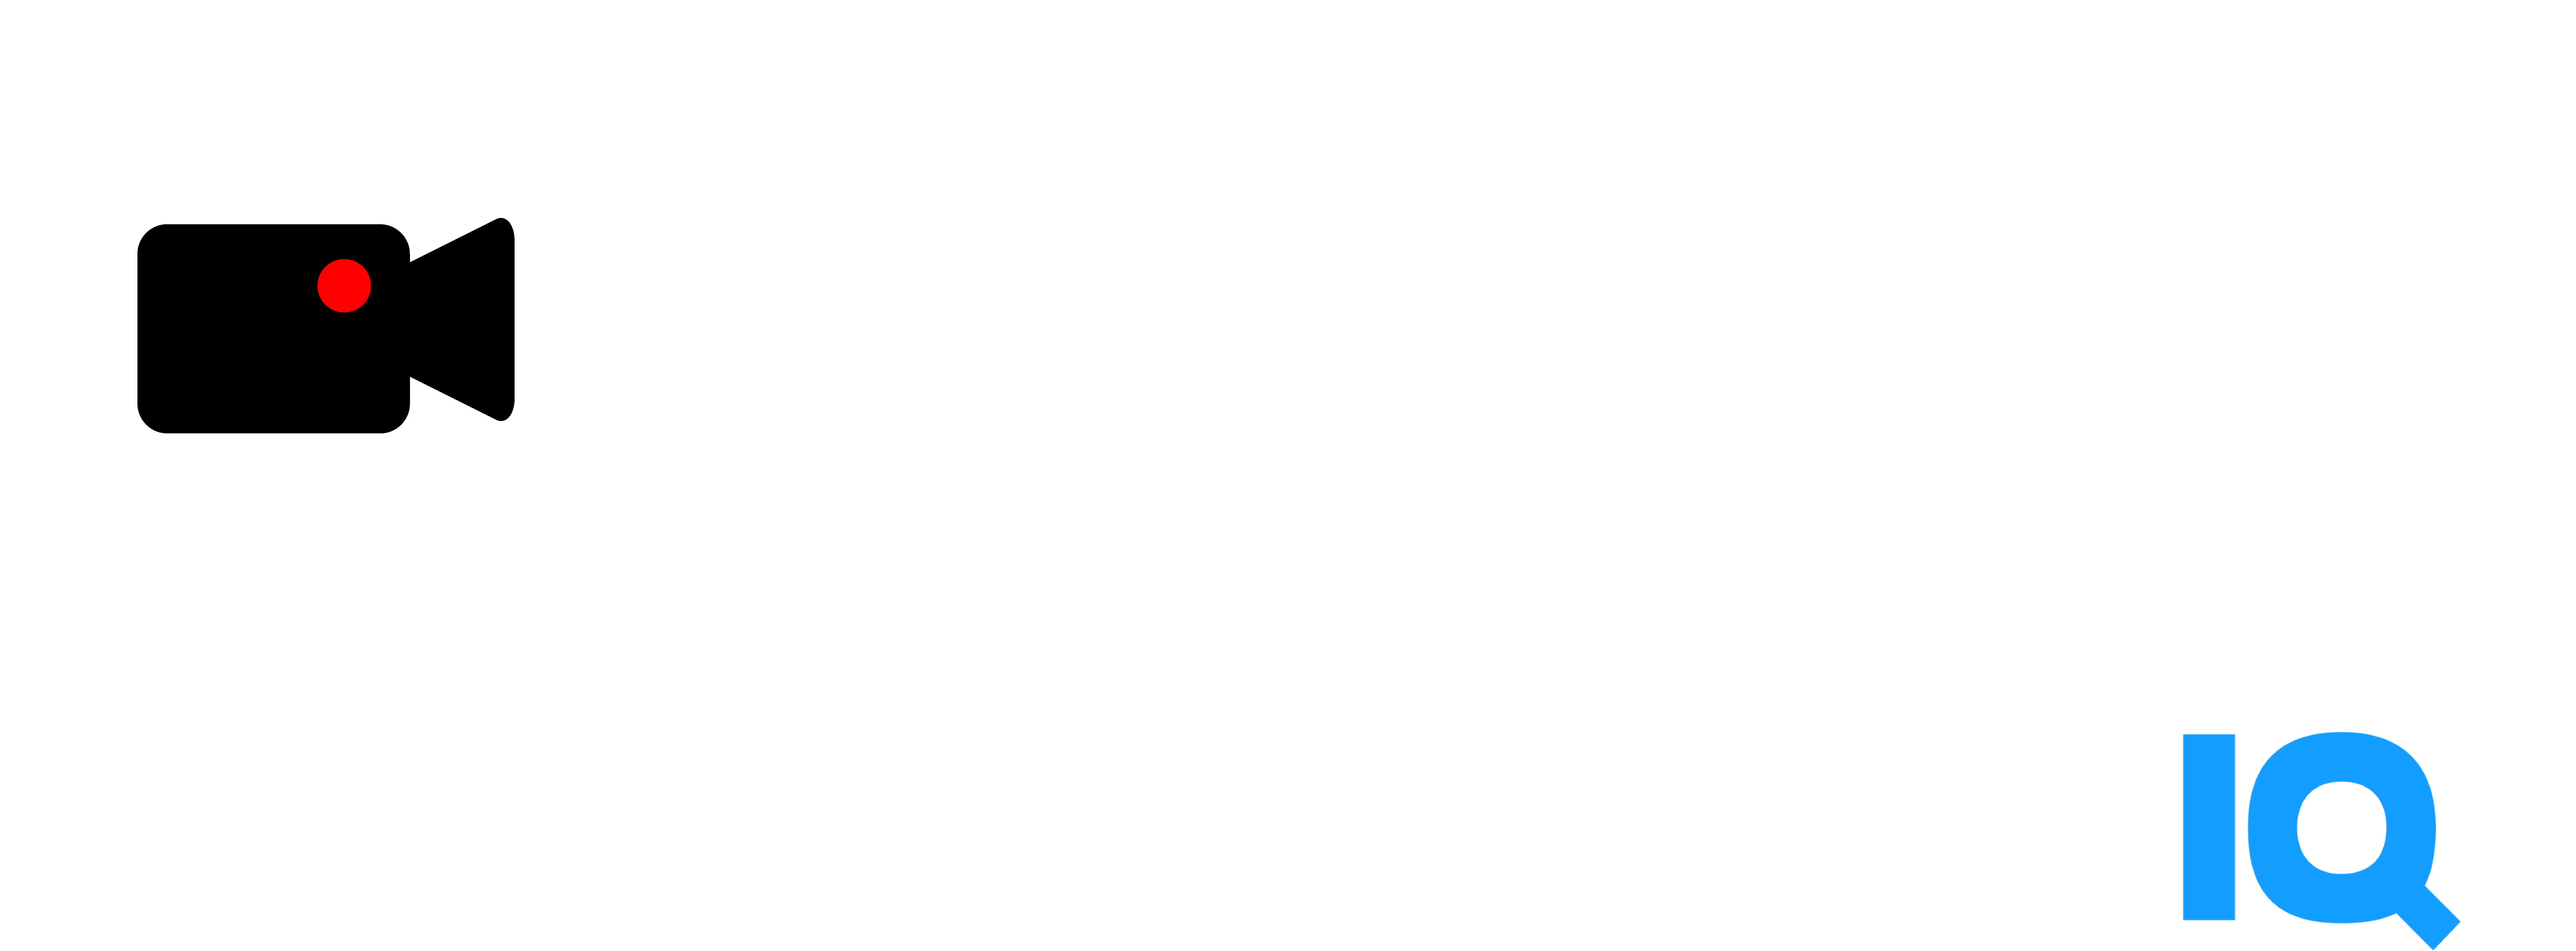 video creators